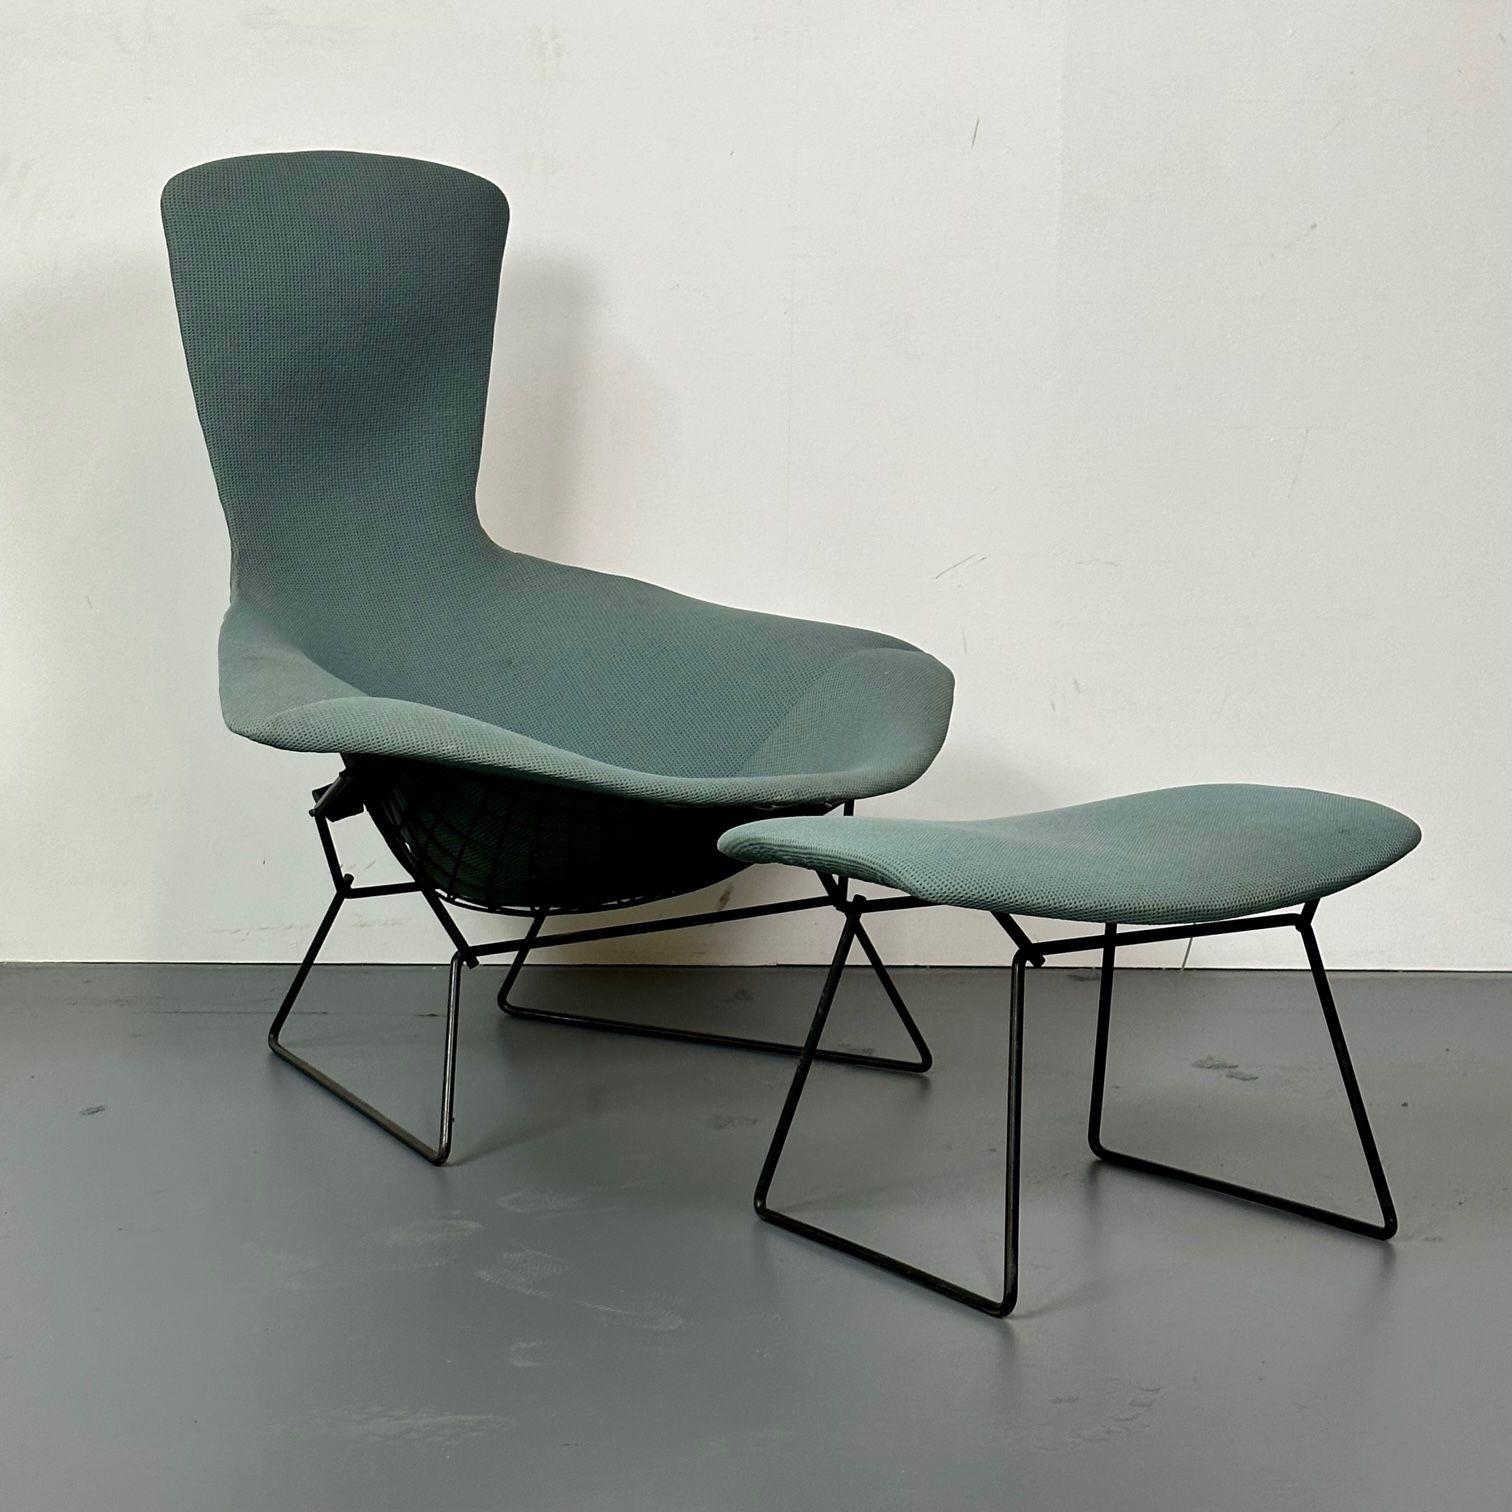 Vintage Harry Bertoia for Knoll Bird Lounge chair with ottoman, Labelled, 1960s, Original Upholstery
 
Conçues à l'origine en 1952, ces chaises longues ergonomiques sont à la fois confortables et élégantes. Les chaises Bertoia sont des fusions